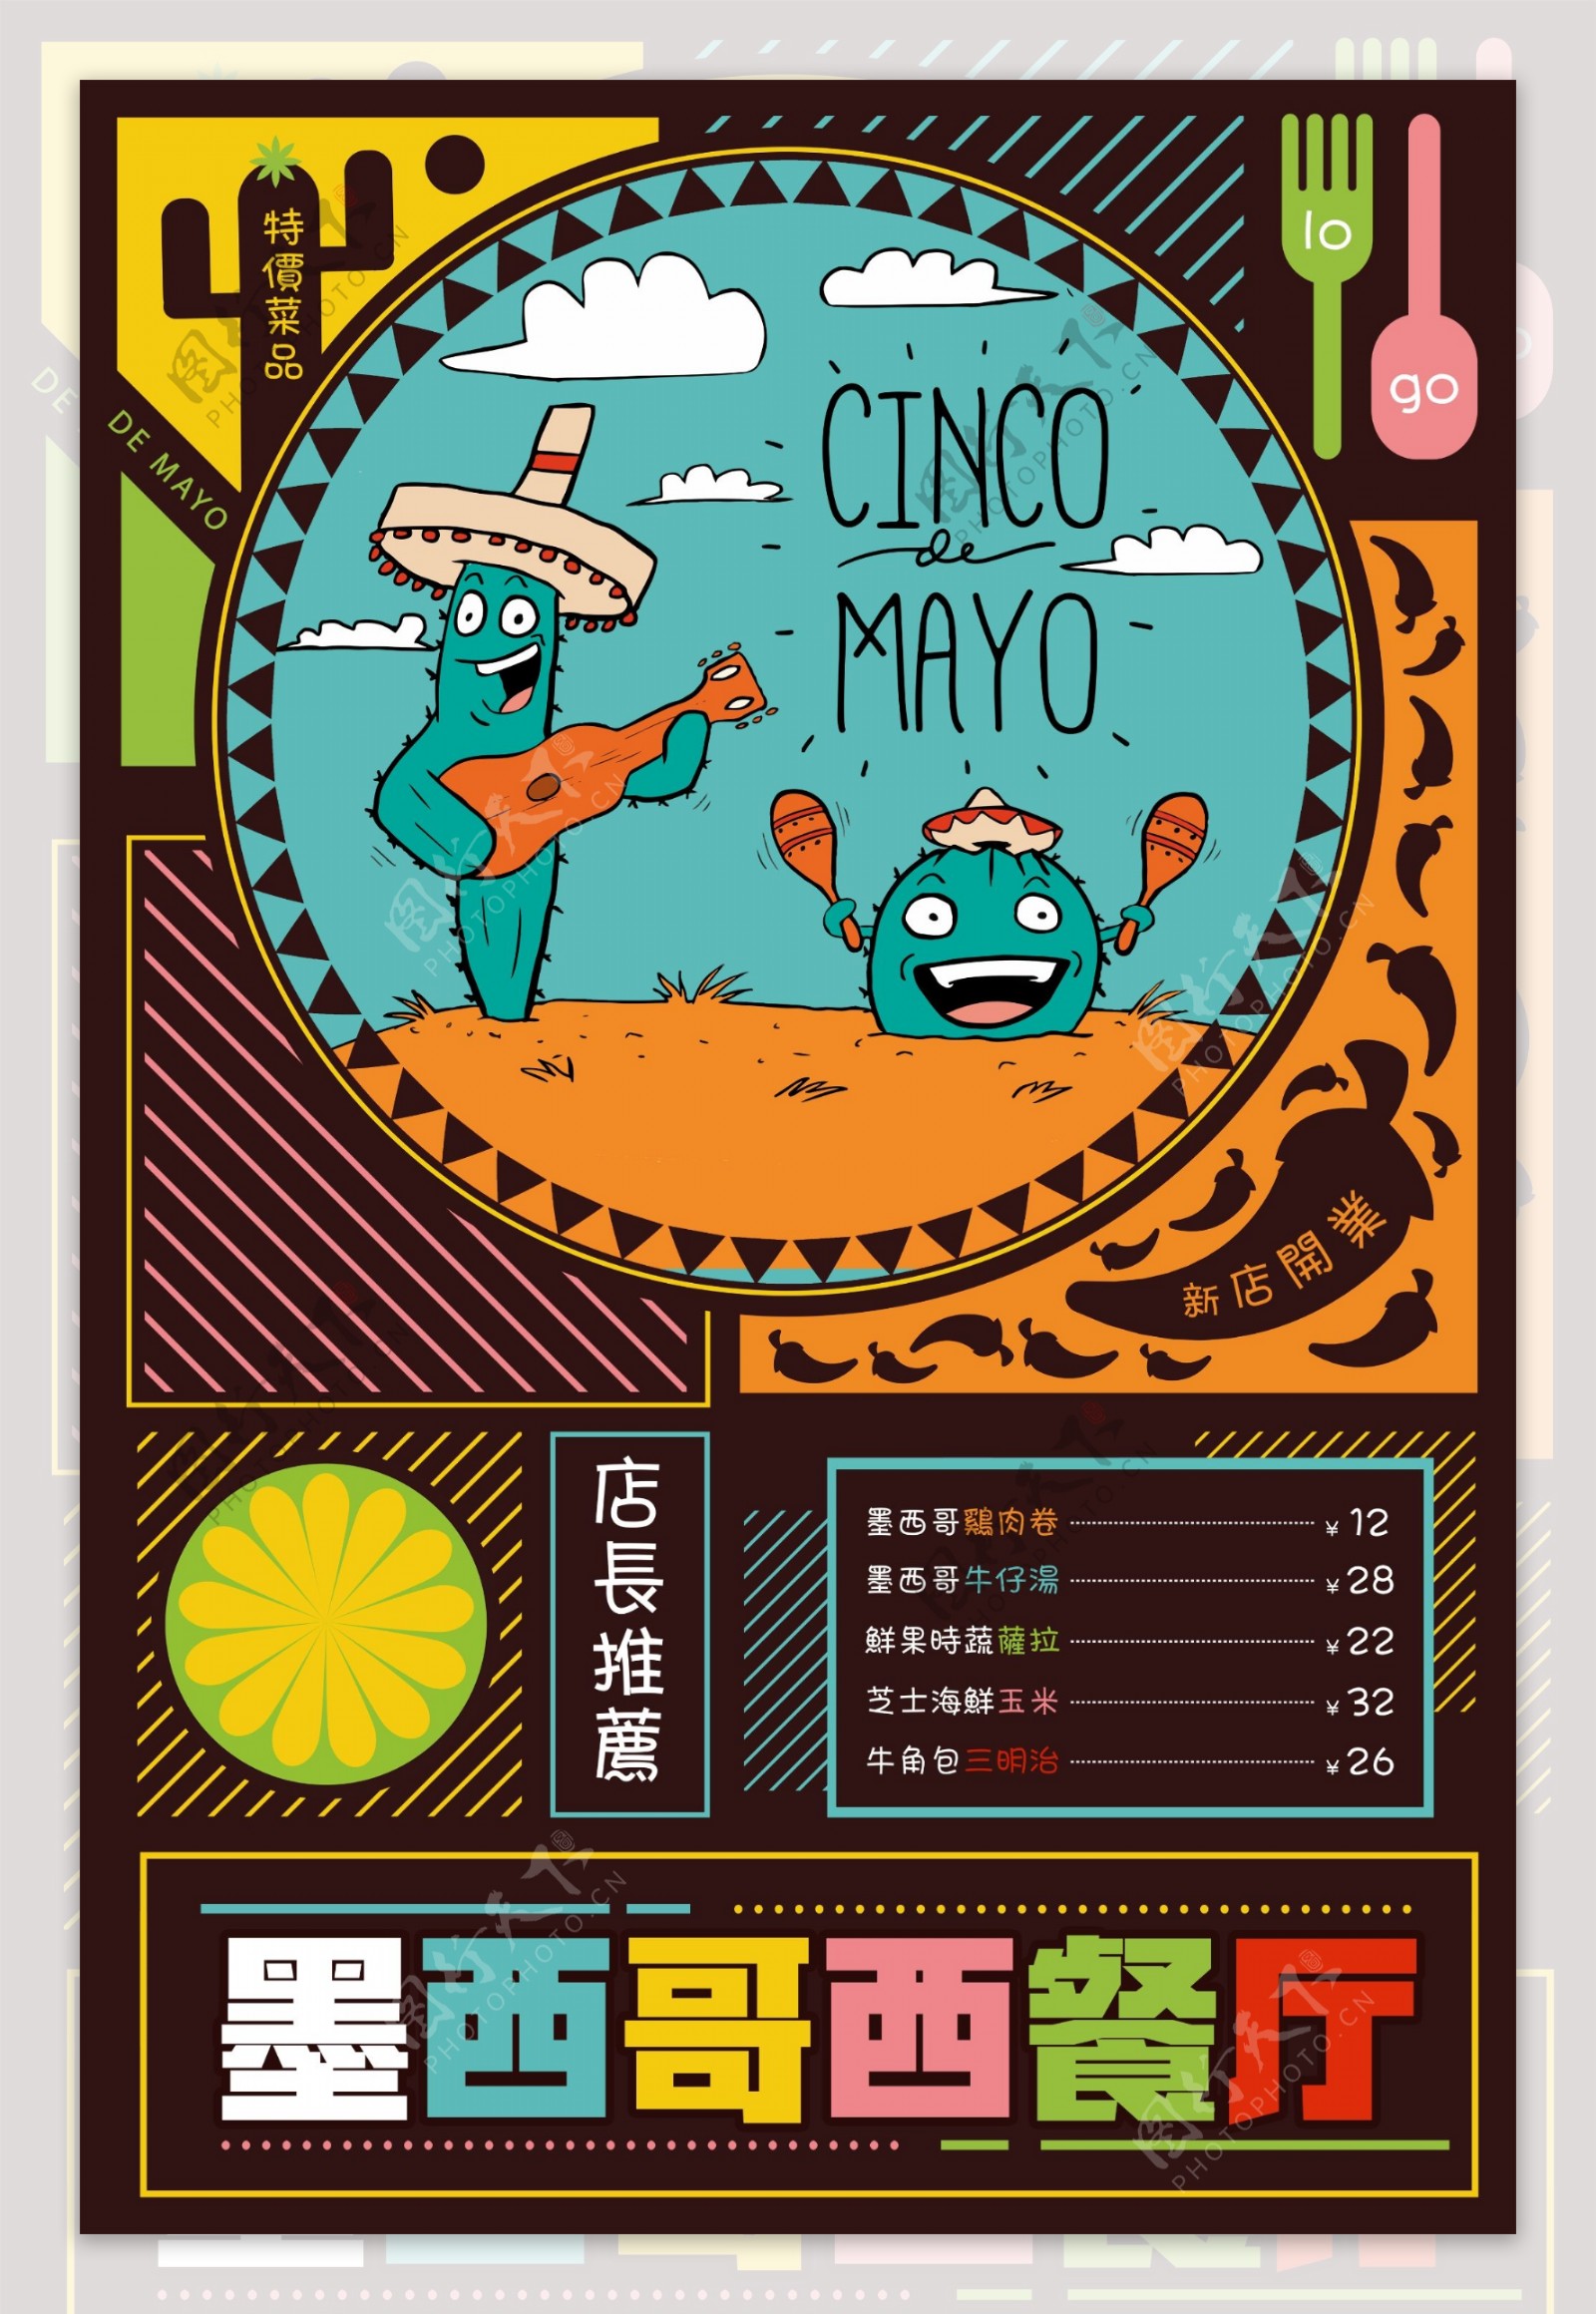 炫彩时尚墨西哥餐厅新品上市海报